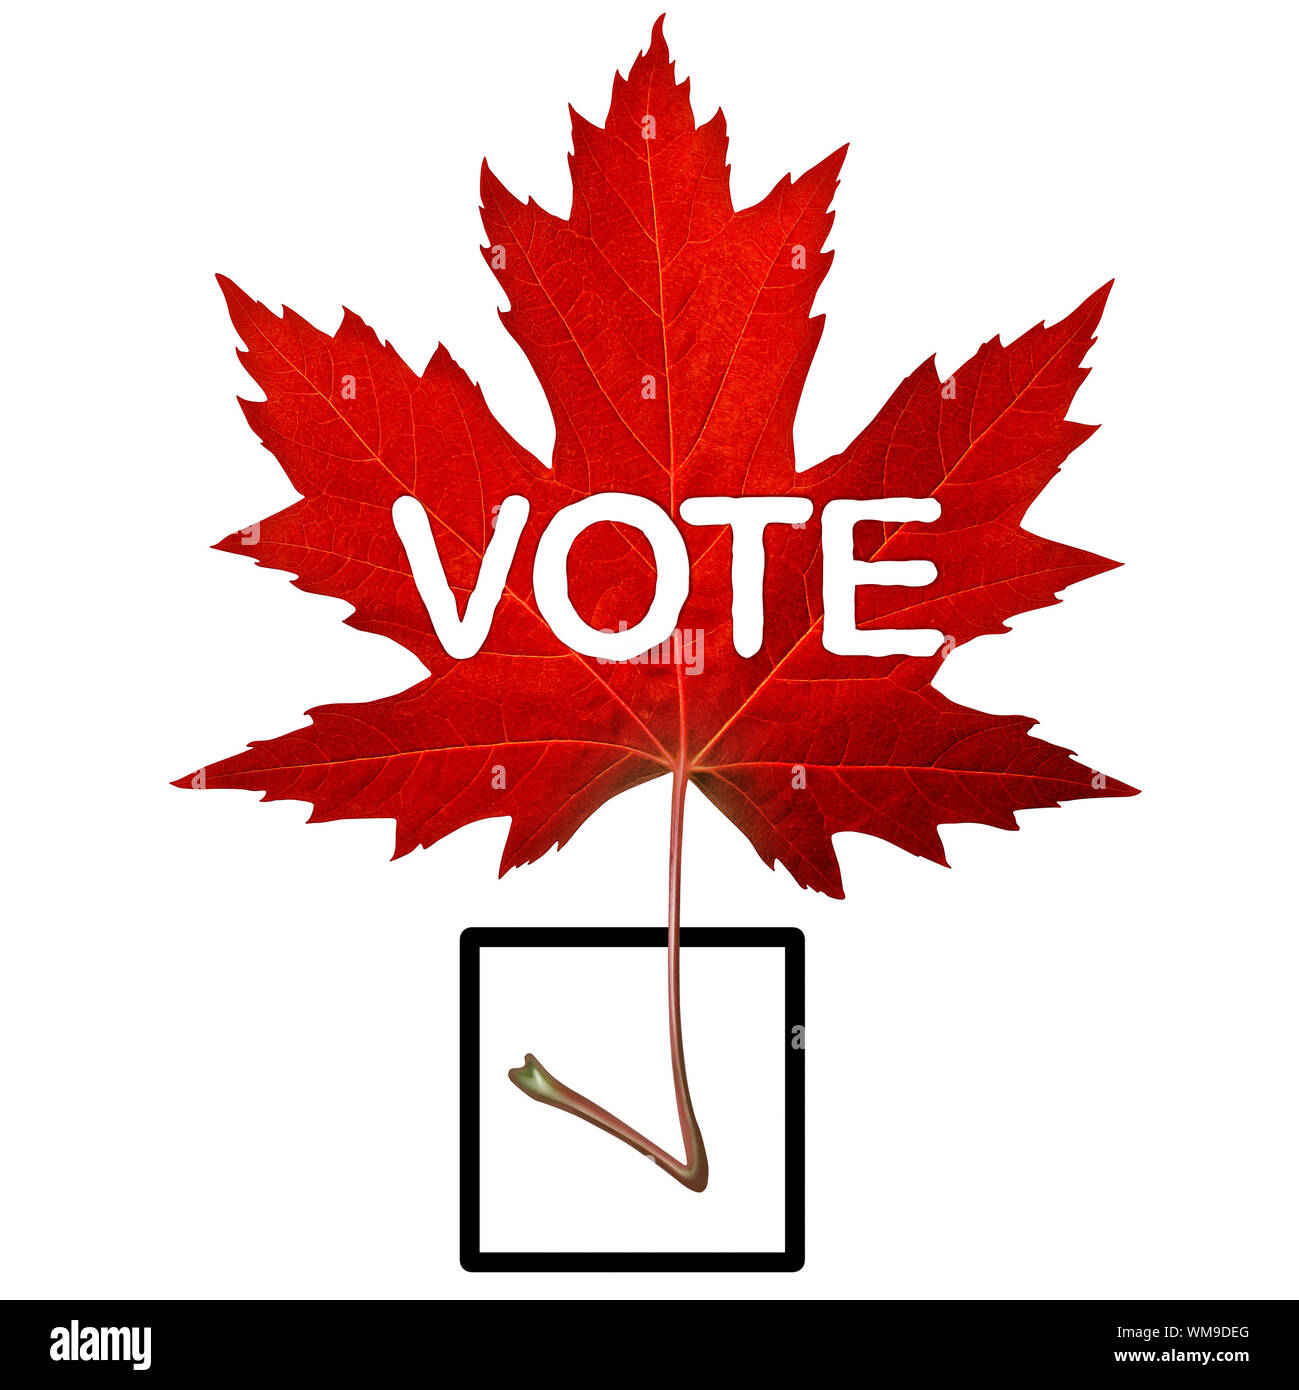 Canada simbolo di voto e di elezione canadese concetto con un rosso maple leaf conformata come un segno di spunta in un 3D illustrazione dello stile. Foto Stock